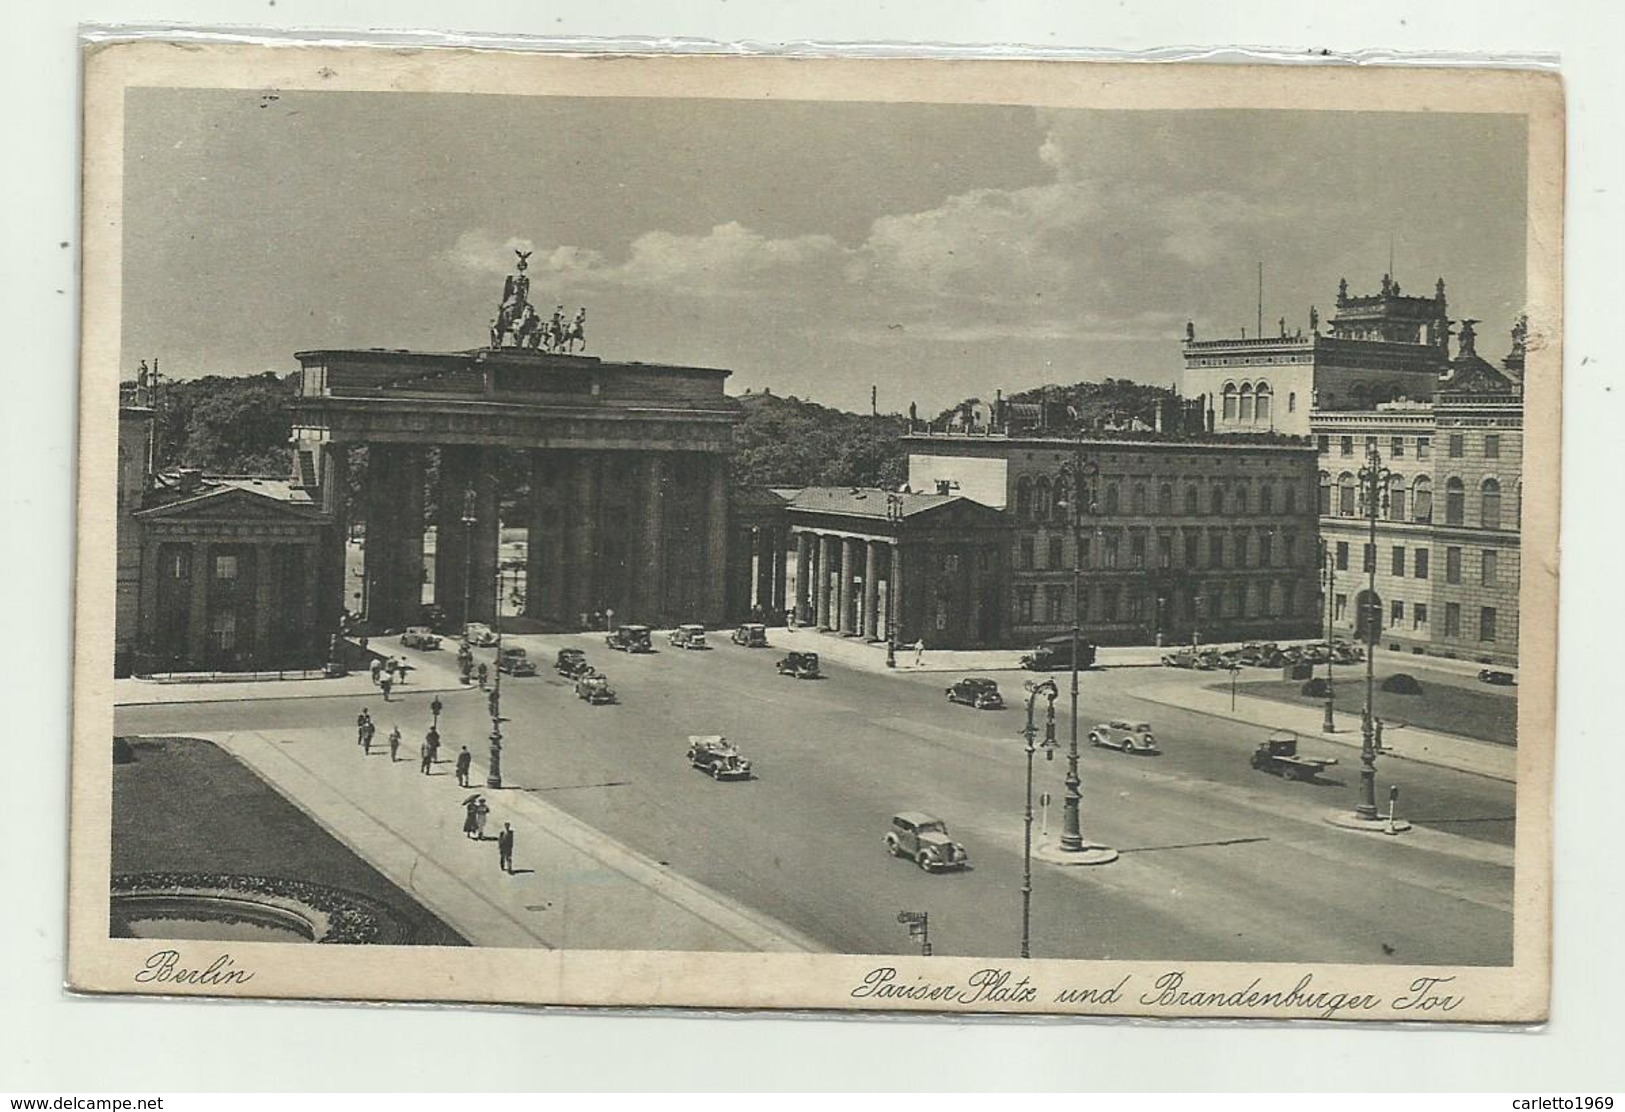 BERLIN - PARISER PLATZ UND BRANDENBURGO TOR 1939 - VIAGGIATA    FP - Brandenburger Deur